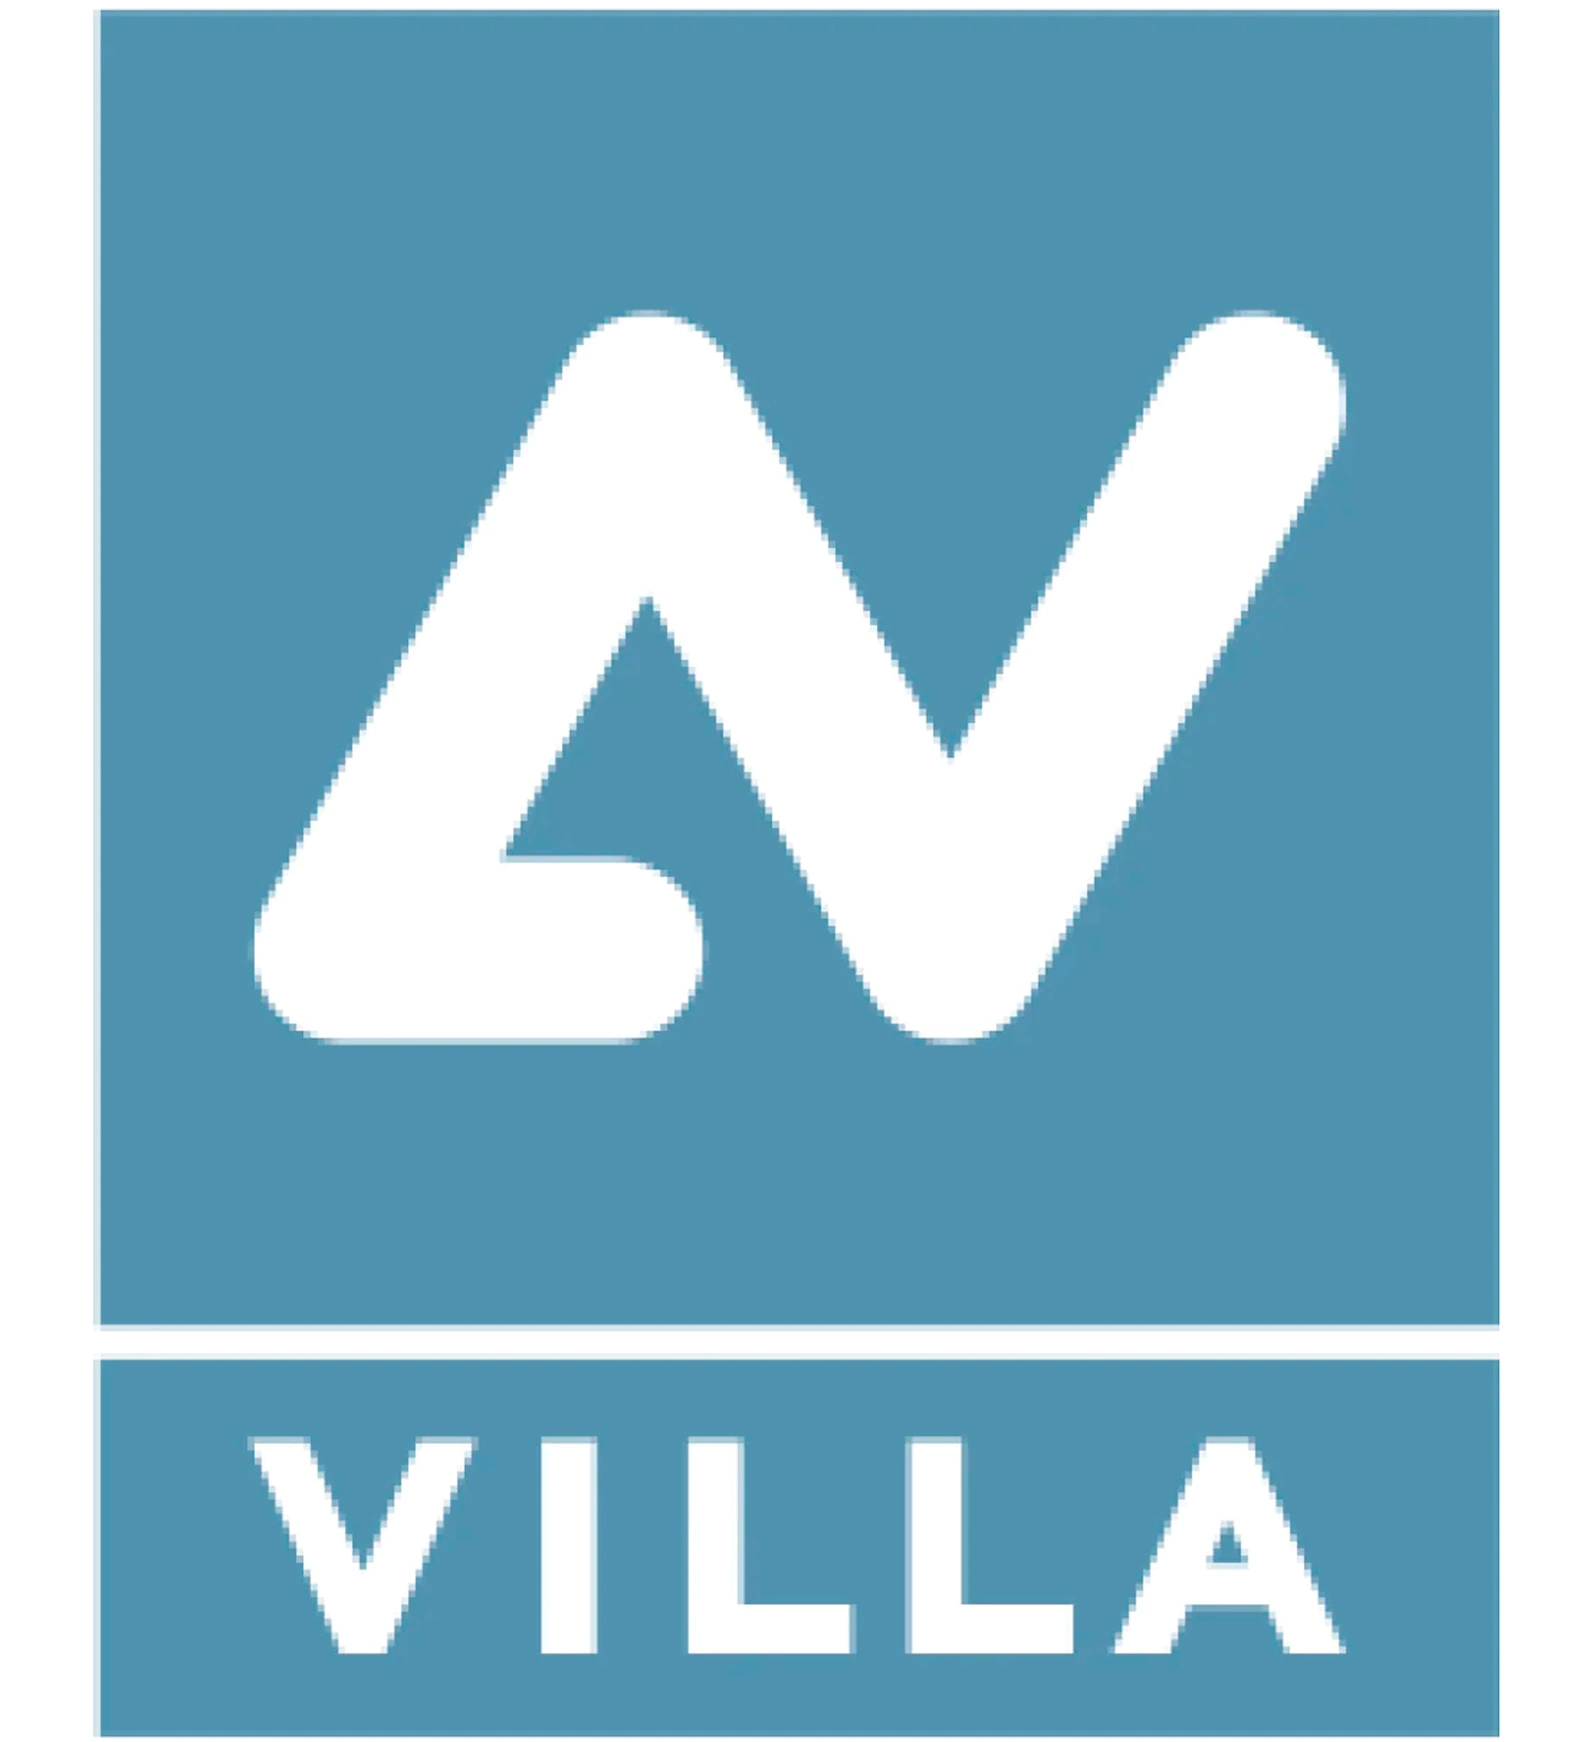 <div><strong>Villa Sistemi Medicali </strong>основана в 1958 году господином Альфио Вилла со штаб-квартирой в Буччиноско (Италия), начиналась как компания, занимавшаяся разработкой диагностических радиологических систем. После слияния нескольких компаний, управляемых Gruppo Villa, таких как Eurostrazza, Fiad, Fao и Joint, <strong>Villa Sistemi Medicali</strong> была основана в 1990 году как опорный центр, способный ценить конкретный опыт, приобретенный в разных секторах.<br><br>Сегодня <strong>Villa Sistemi Medicali</strong> продолжает руководствоваться динамичным предпринимательским духом, передовыми концепциями, централизованными услугами и диверсифицированным производством как ключевые характеристики, позволяющие компании выходить на внутренние и международные рынки. Установление строгой системы качества, растущая научная преданность исследованиям и прикладным сферам, а также глубокое маркетинговое знание потребностей клиентов обеспечивают консолидацию компании как важного итальянского производителя радиологических устройств и как одного из<strong> европейских лидеров с разветвленной</strong> дистрибьюторской сетью по всему миру (более 90 стран).<br><br></div>